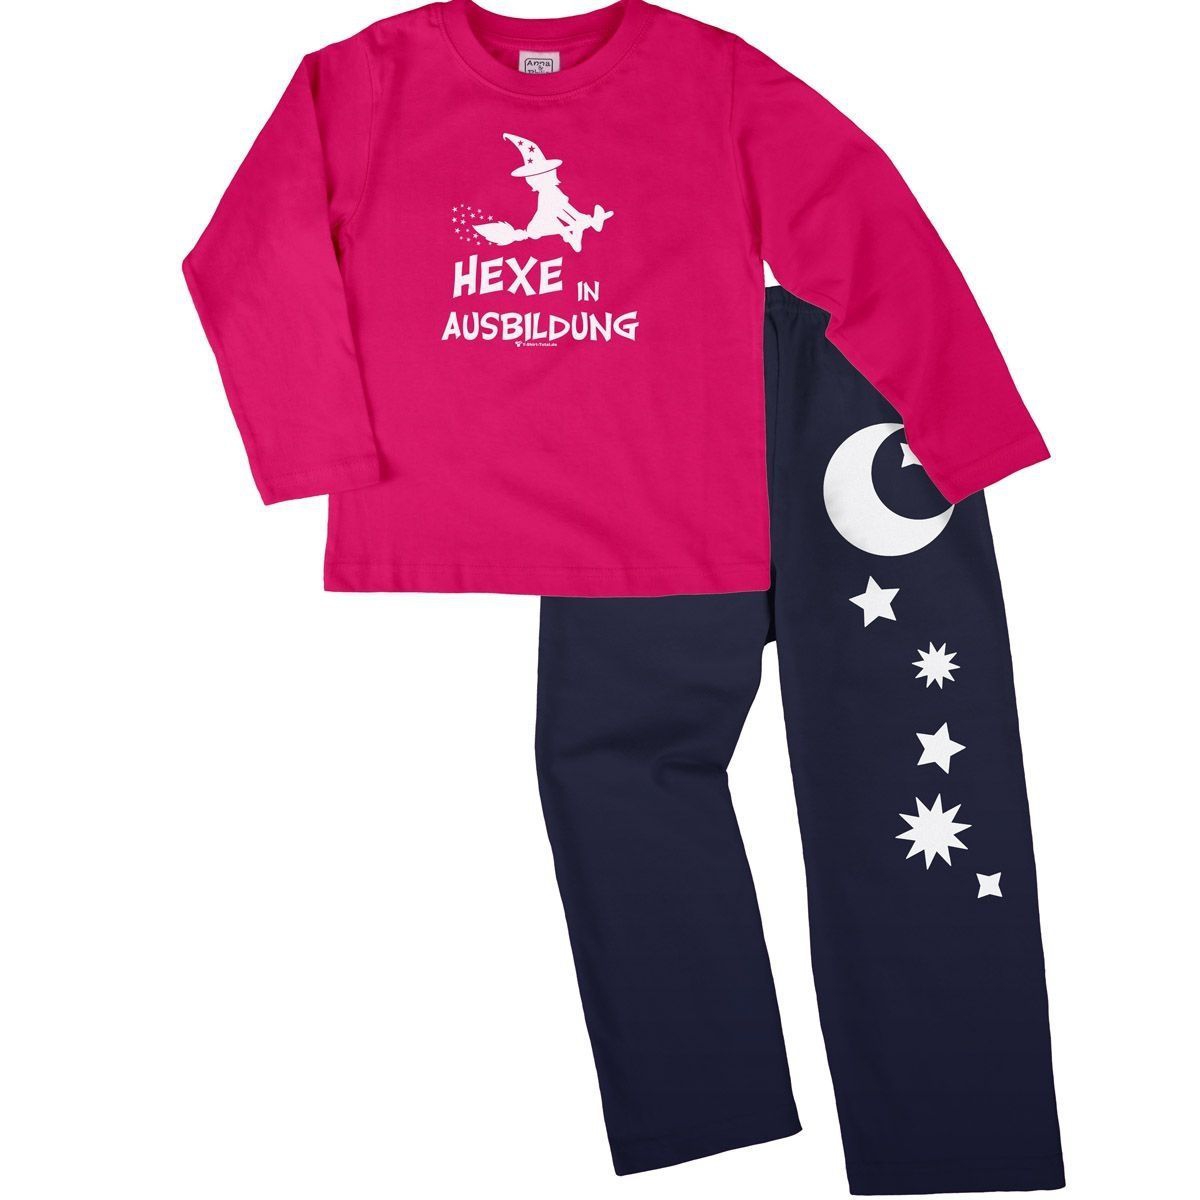 Hexe in Ausbildung Pyjama Set pink / navy 104